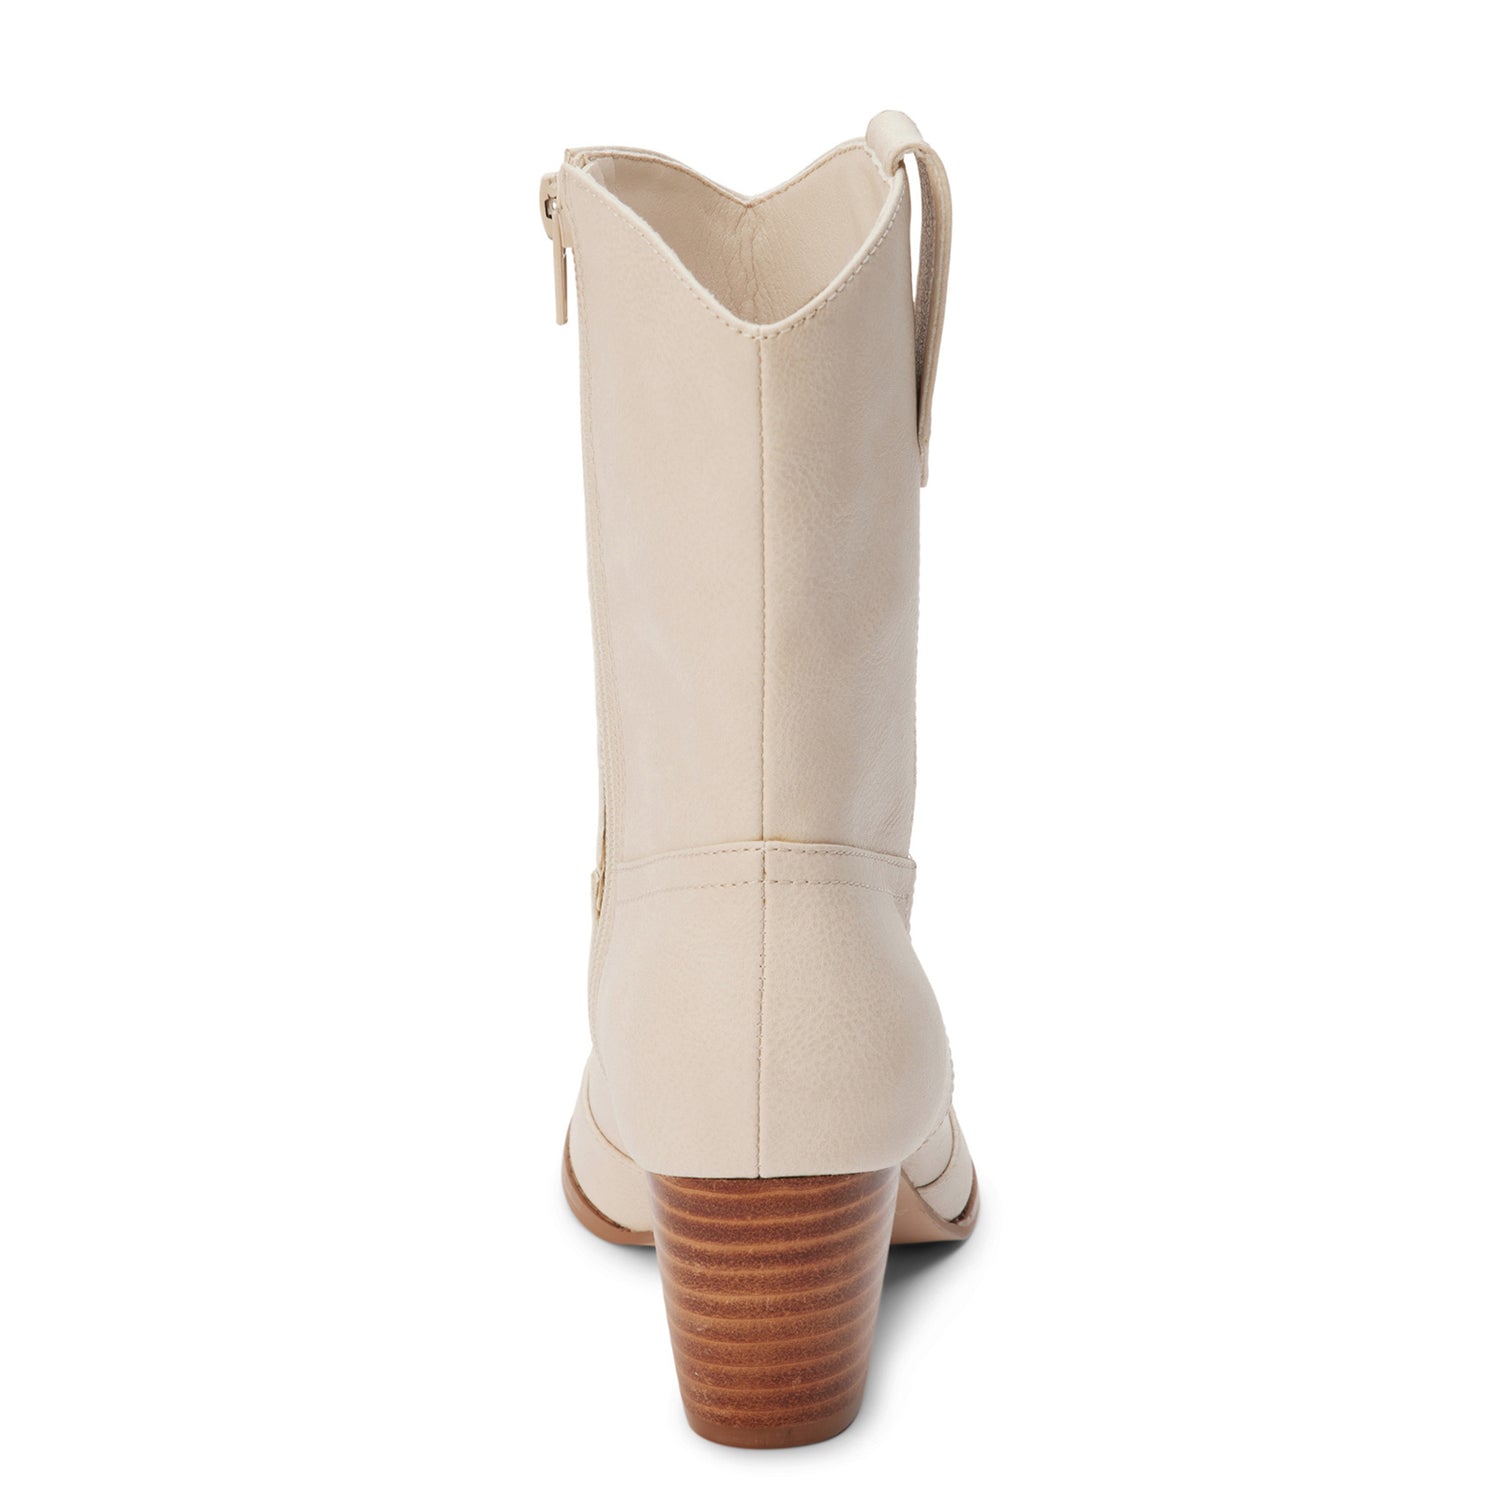 Matisse Bodhi Boot- Cream 8.5